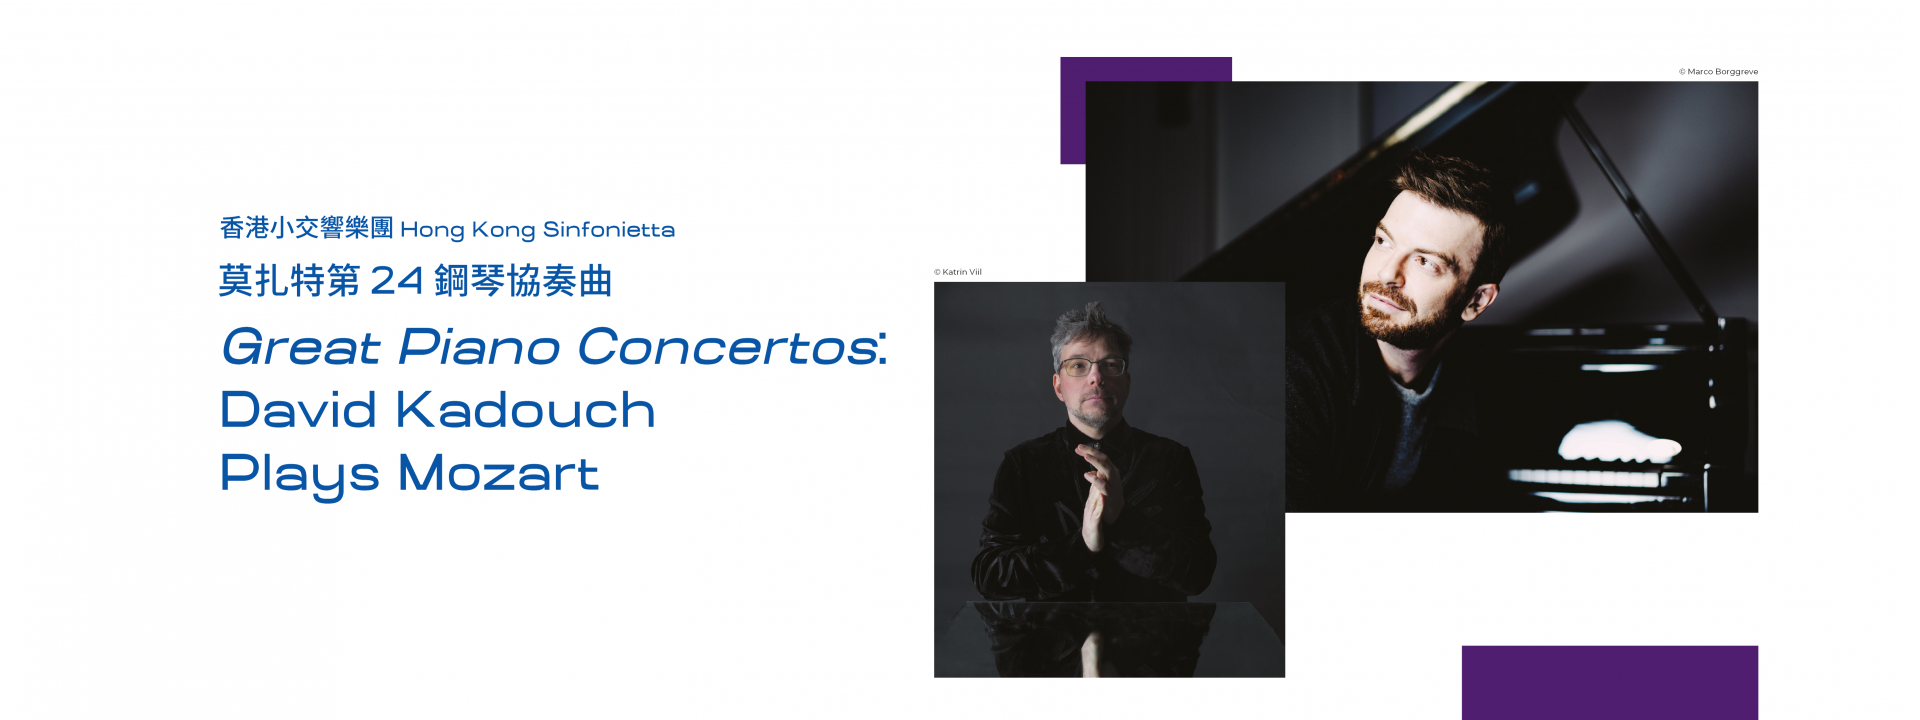 Great Piano Concertos: David Kadouch Plays Mozart